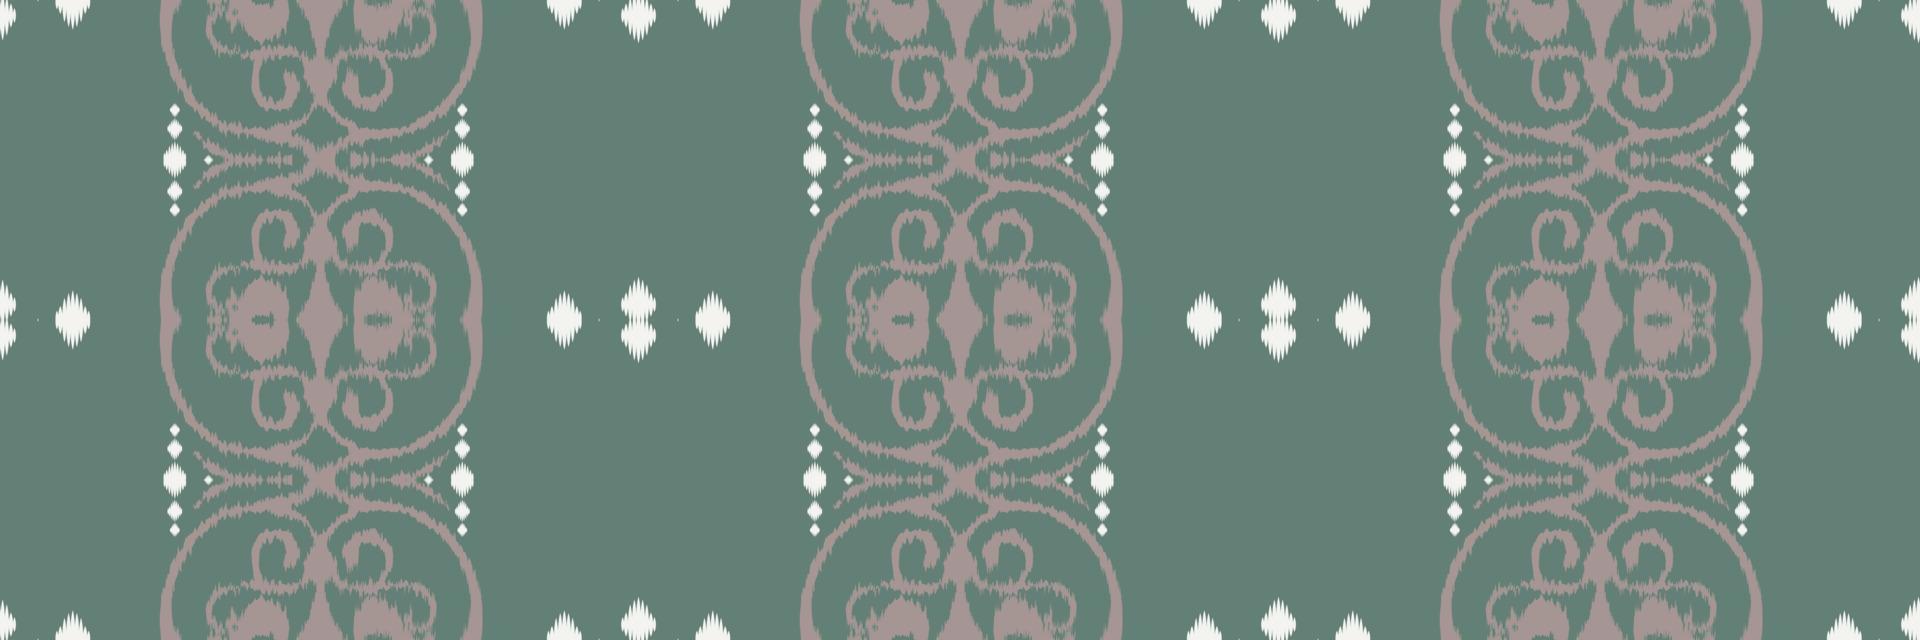 batik textil étnico ikat diseños de patrones sin fisuras diseño vectorial digital para imprimir saree kurti borde de tela símbolos de pincel muestras con estilo vector